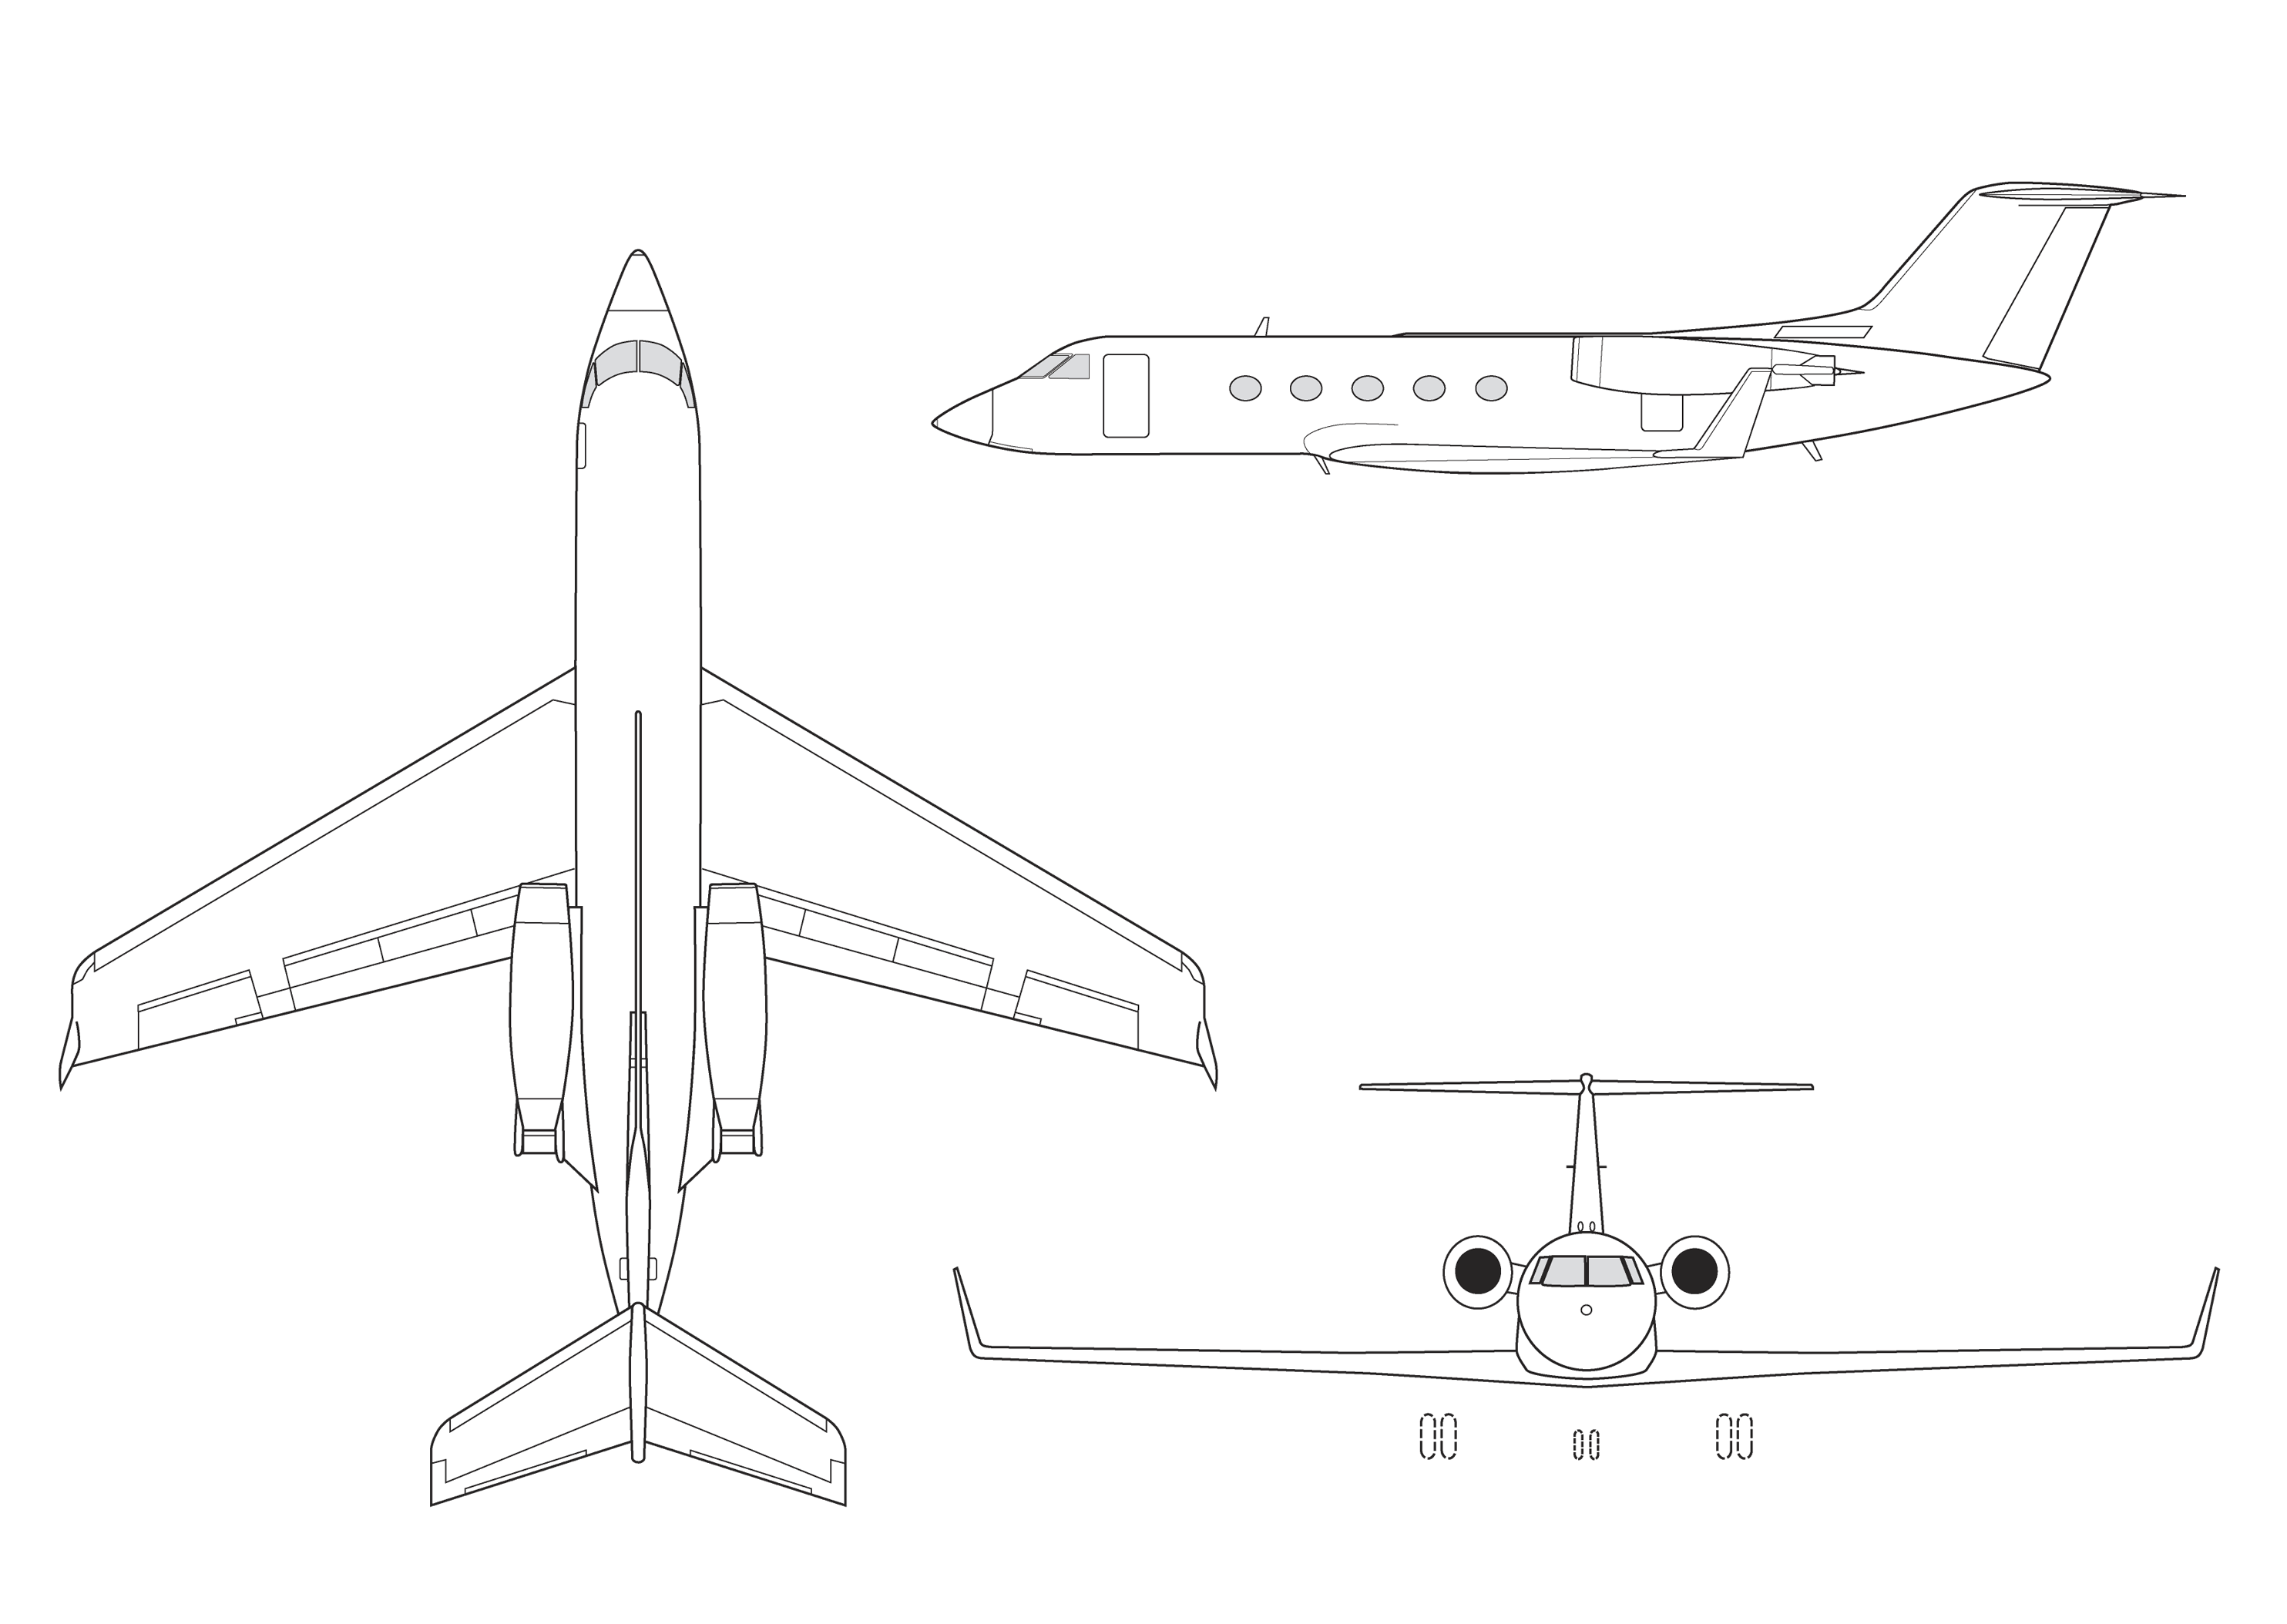 Gulfstream III three-view graphic.